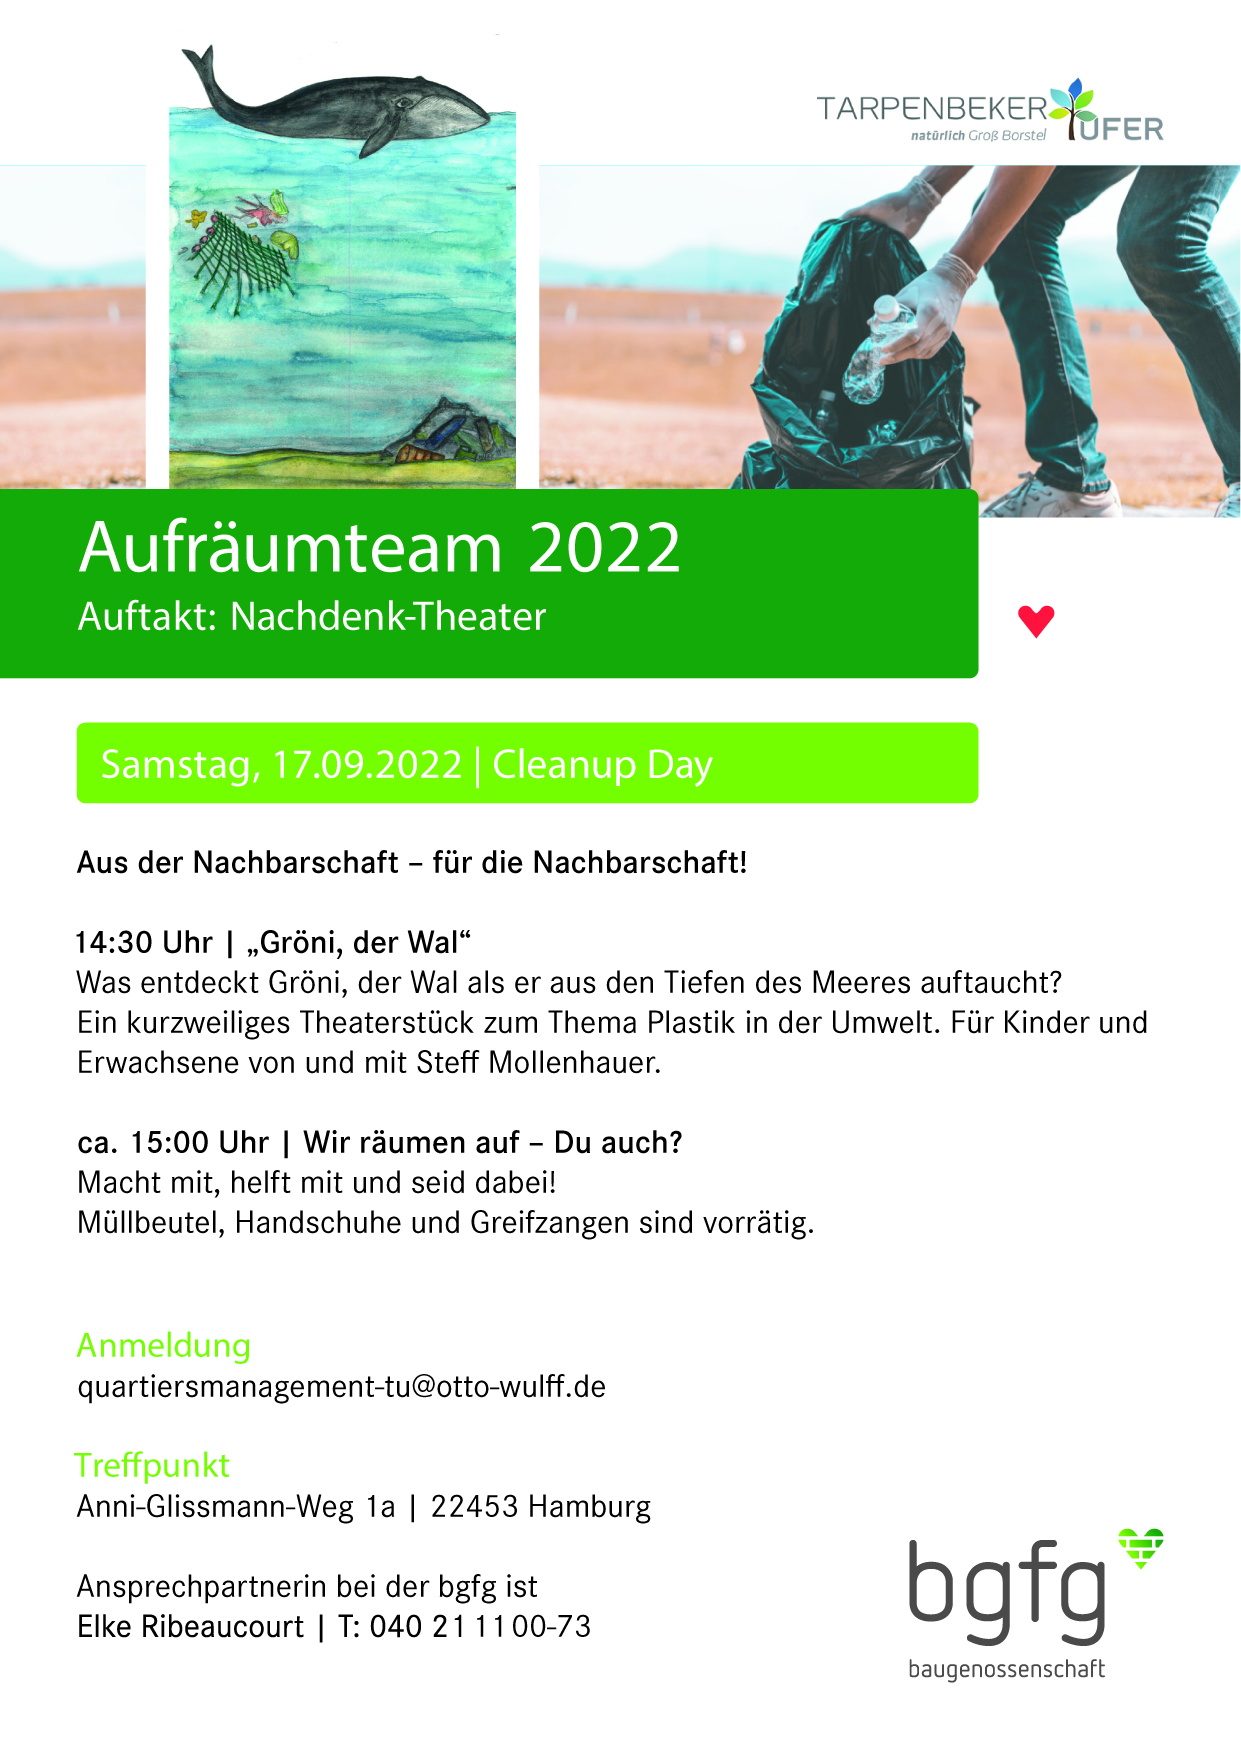 Aufräumteam 2022 - Tarpenbeker Ufer (Hamburg)